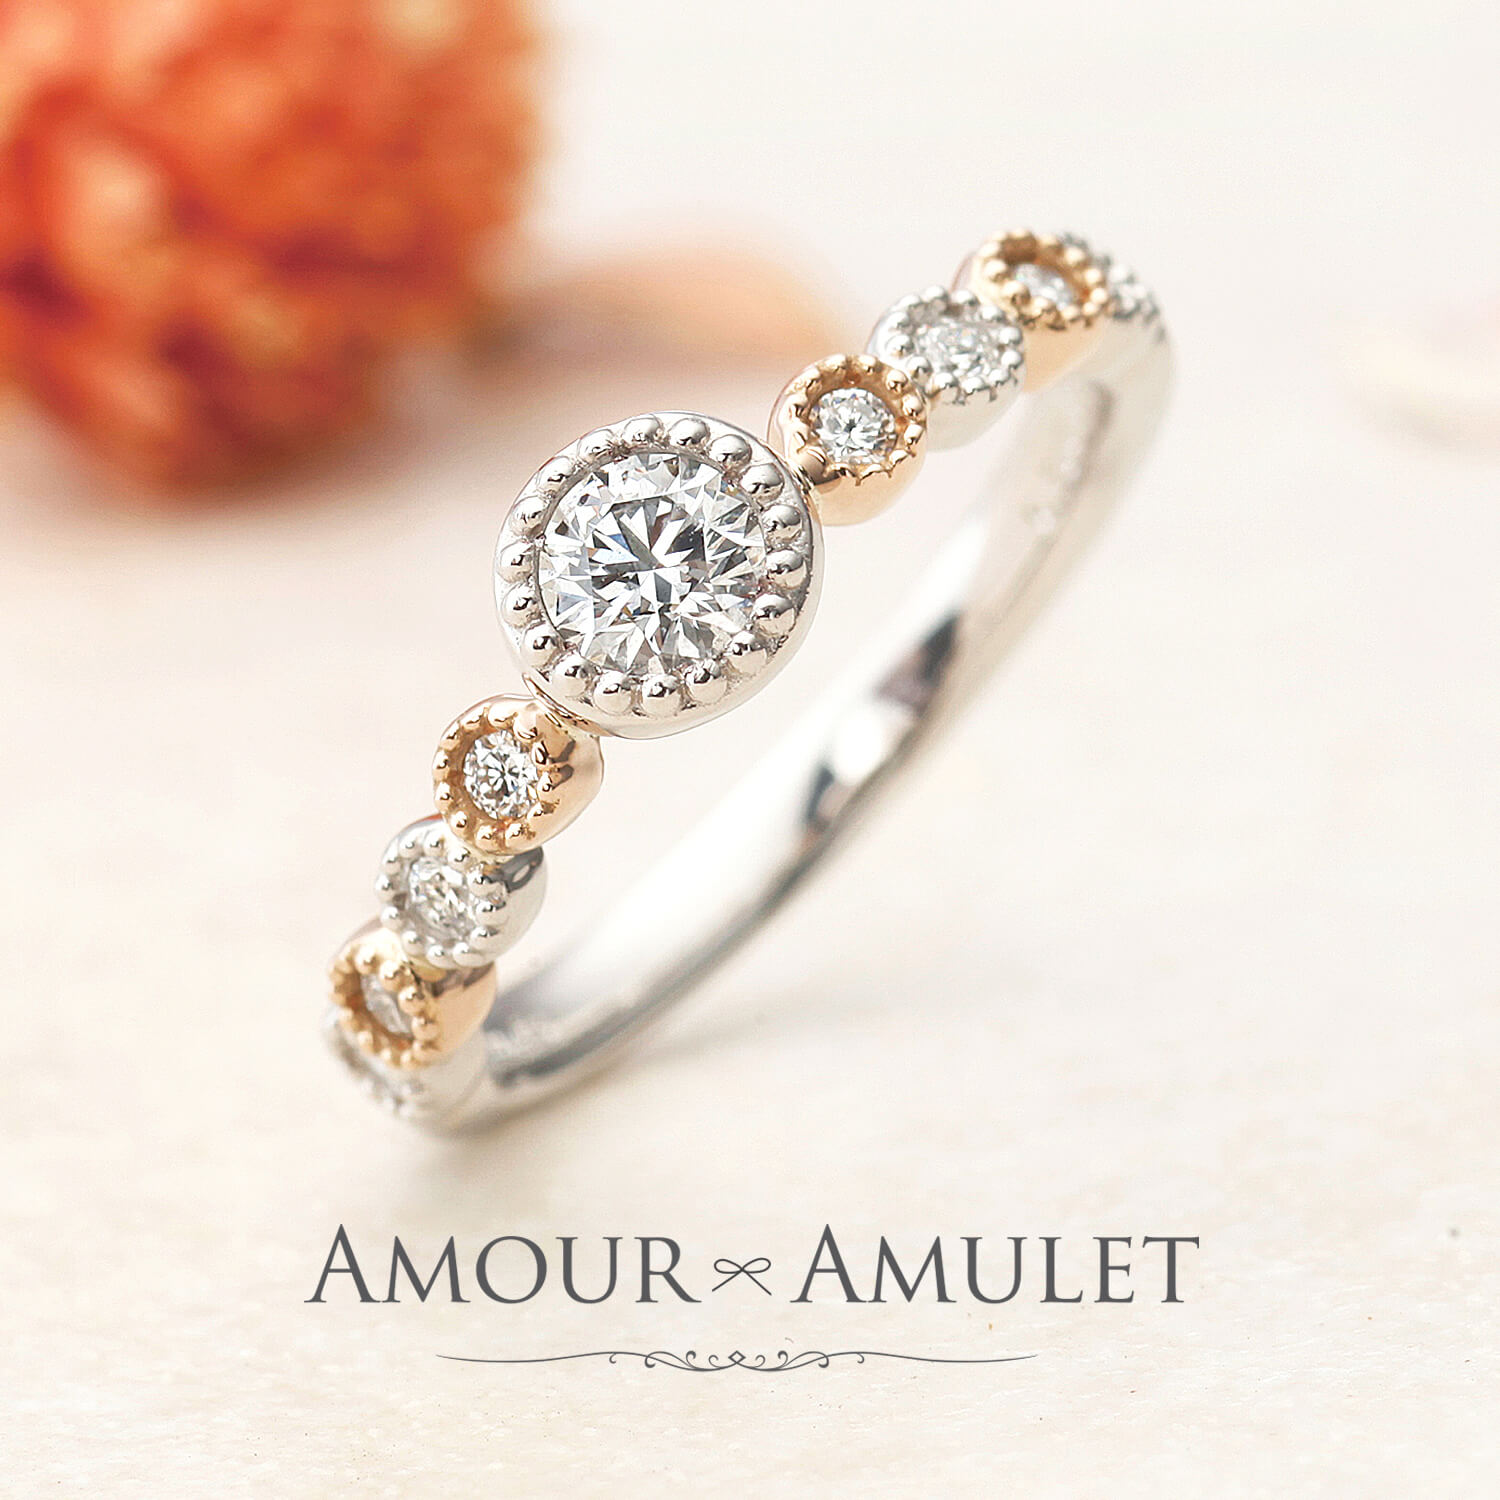 AMOURAMULETアムールアミュレットの婚約指輪MONBIJOUモンビジュー